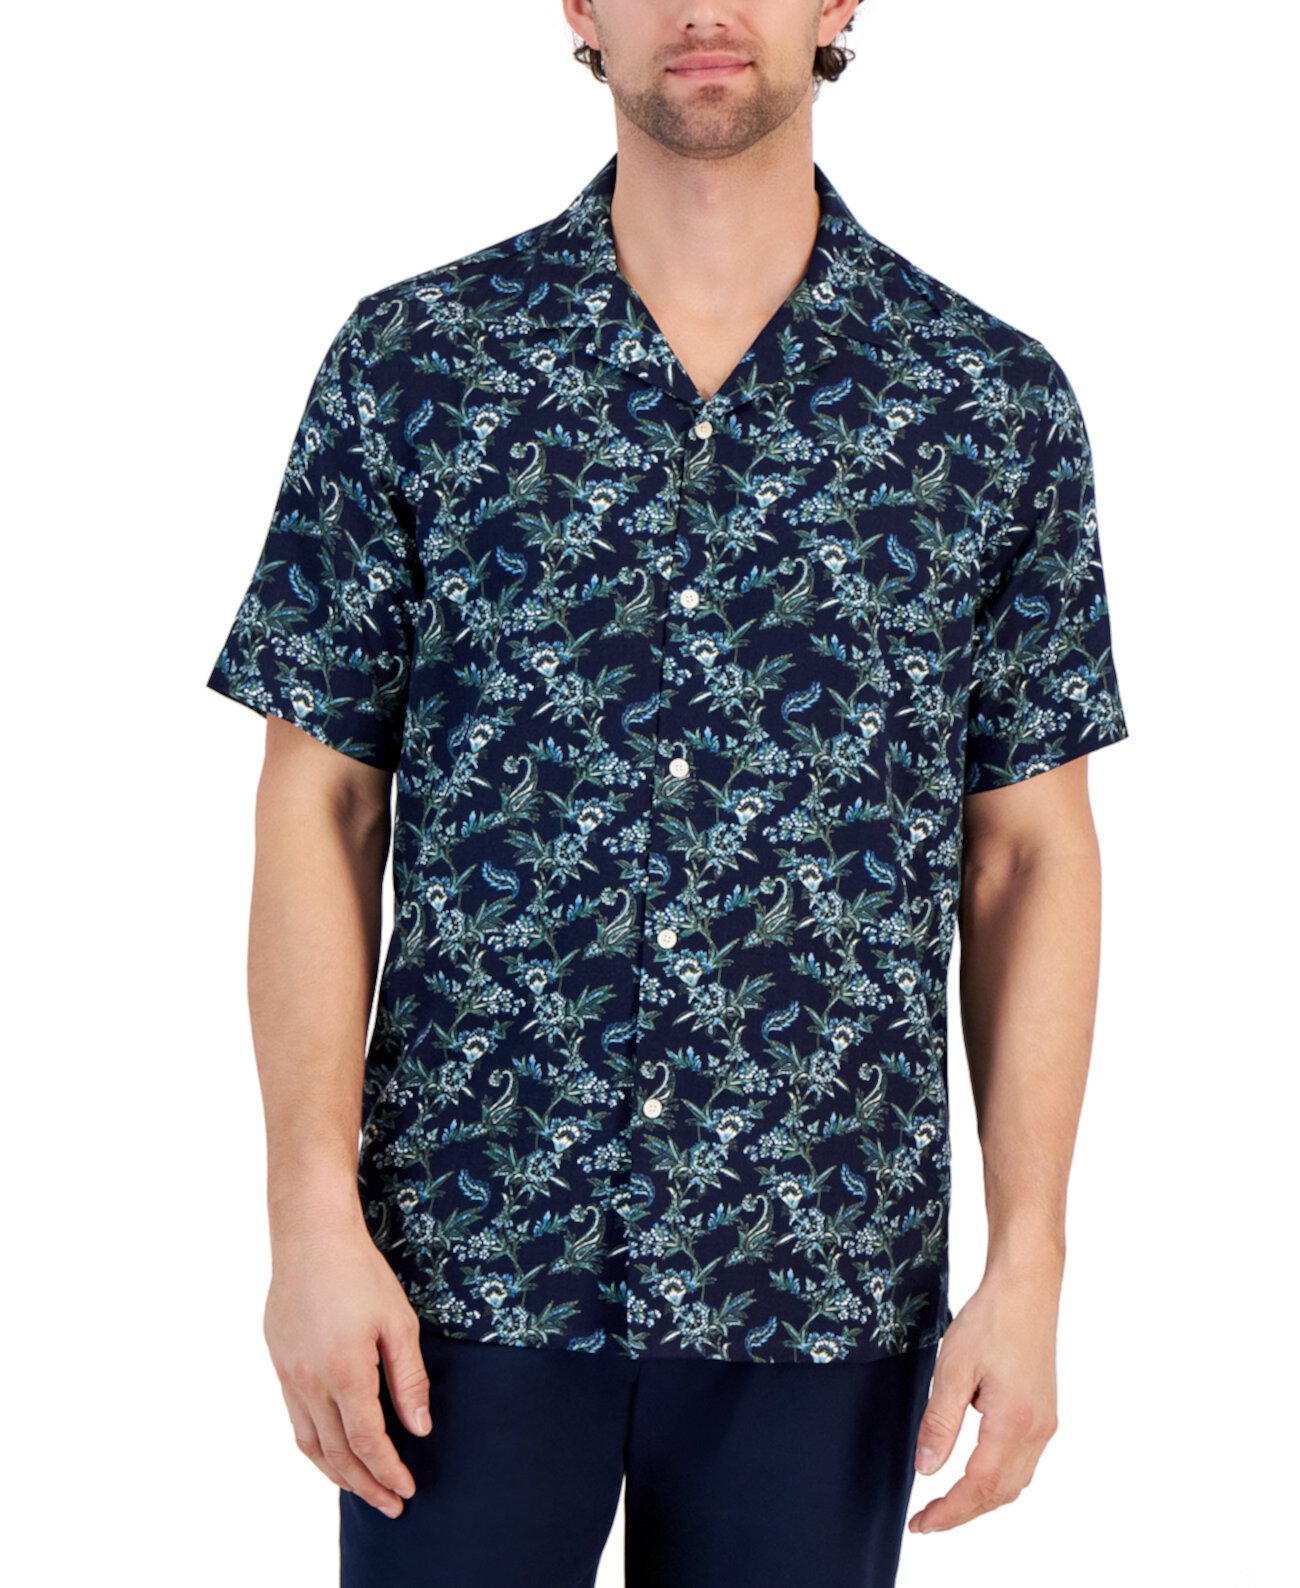 Мужская рубашка с цветочным принтом, созданная для Macy's Club Room